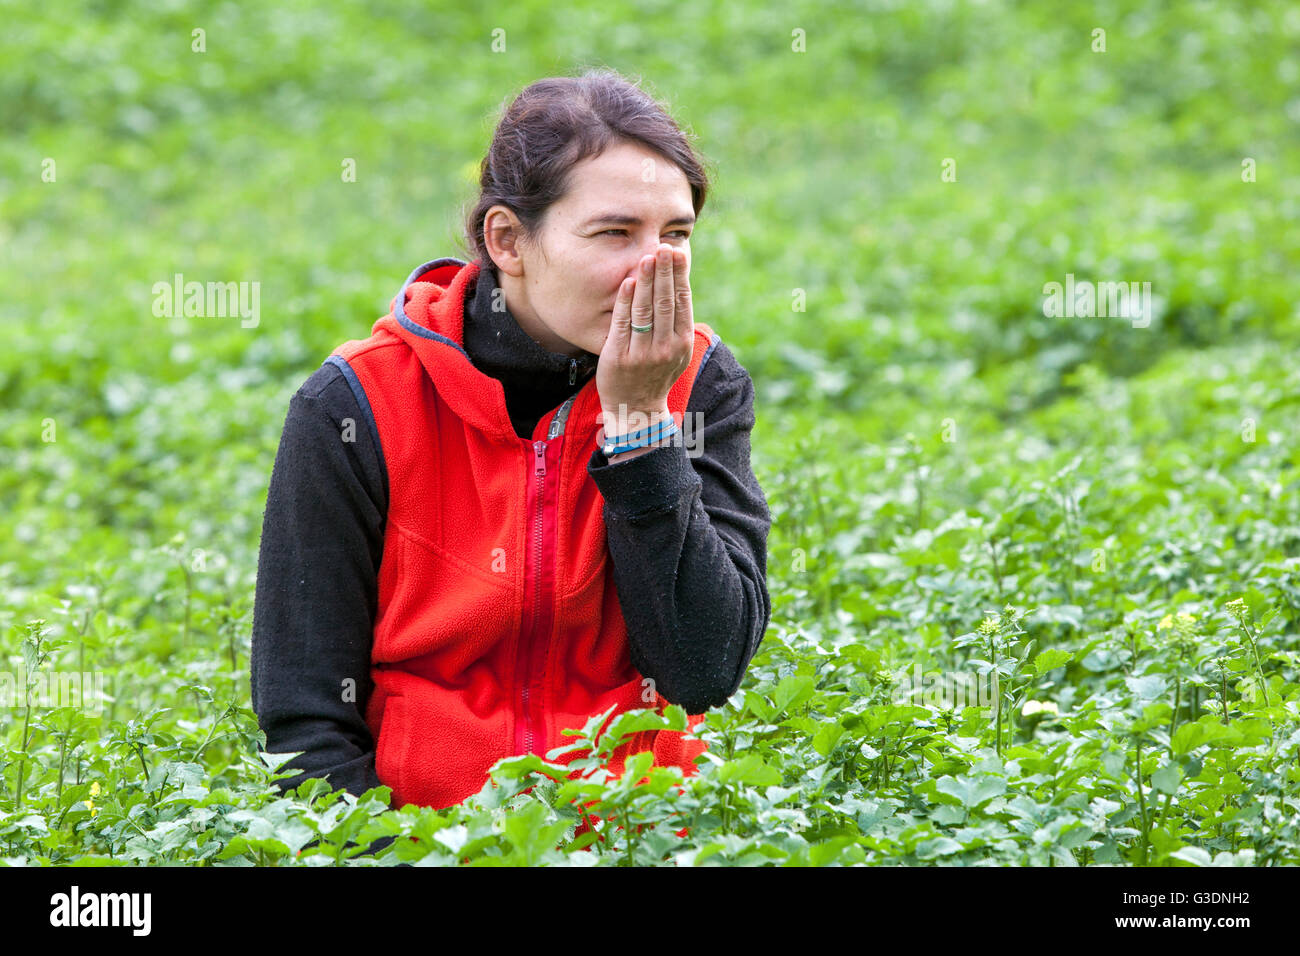 Frau im Kräutergarten Kraut der aromatischen Pflanzen Dame riechende Pflanzen Frau Kräutergarten Stockfoto